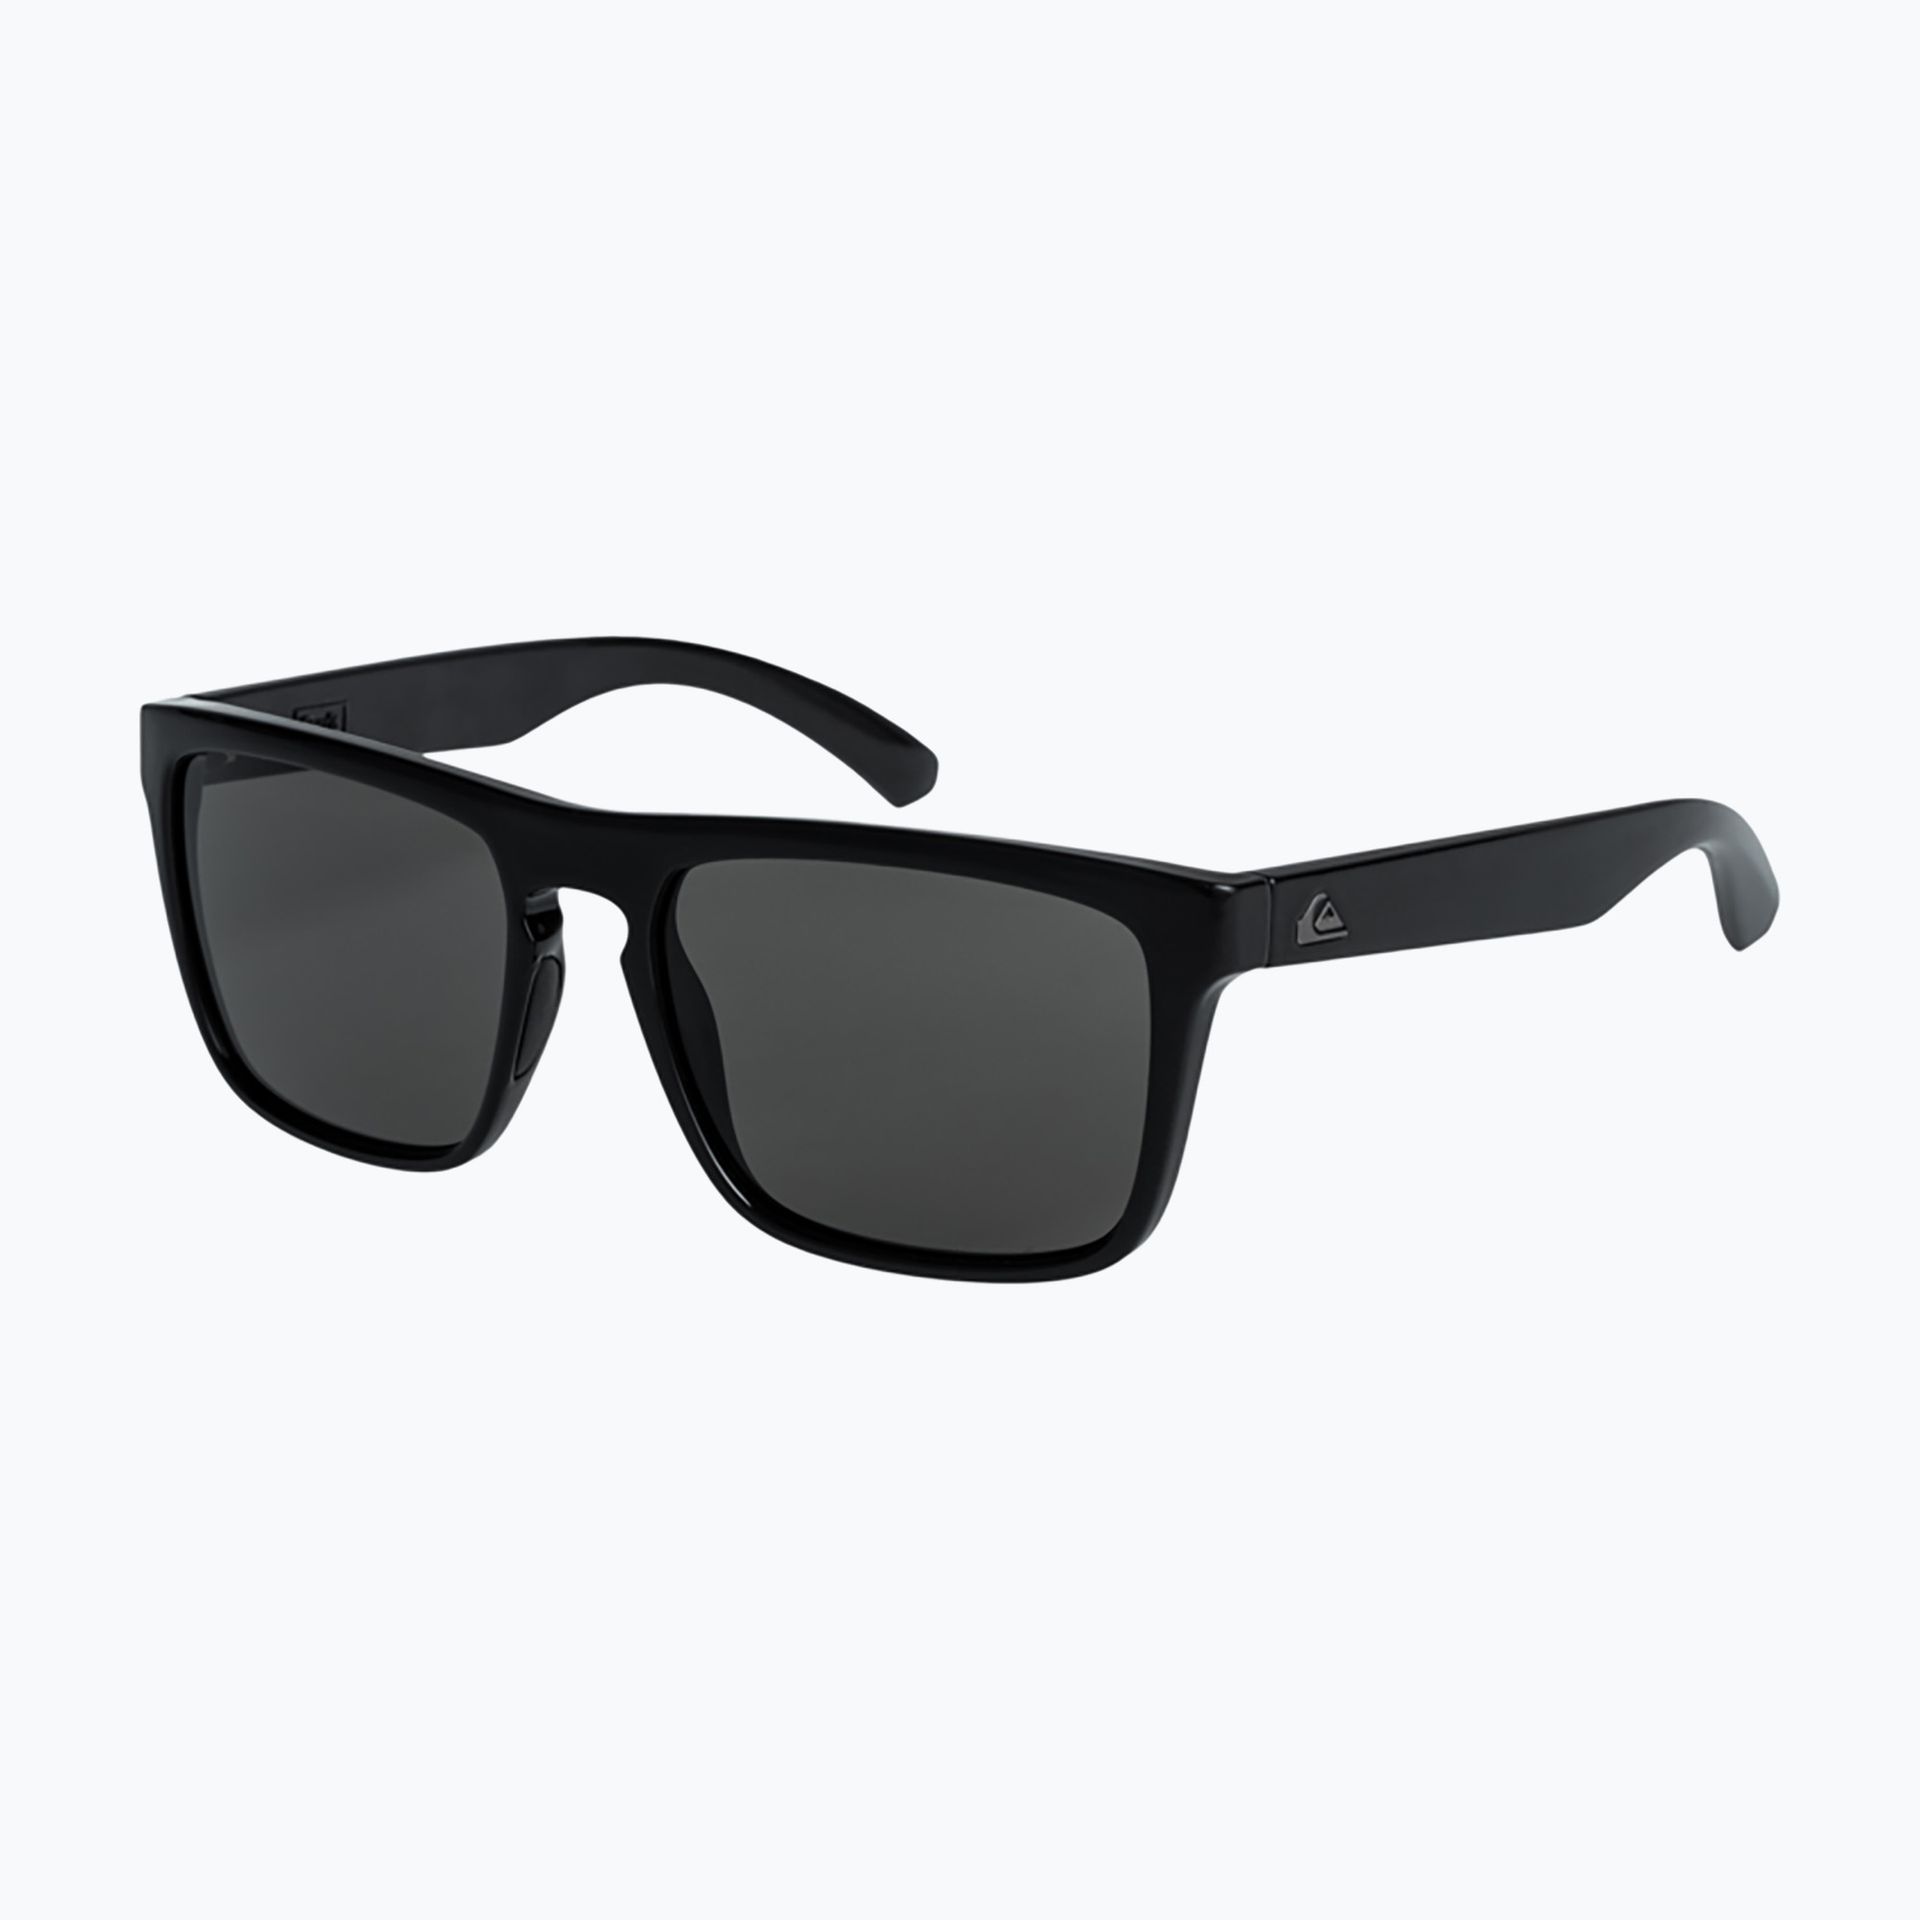 Okulary przeciwsłoneczne męskie Quiksilver Ferris black/grey | WYSYŁKA W 24H | 30 DNI NA ZWROT